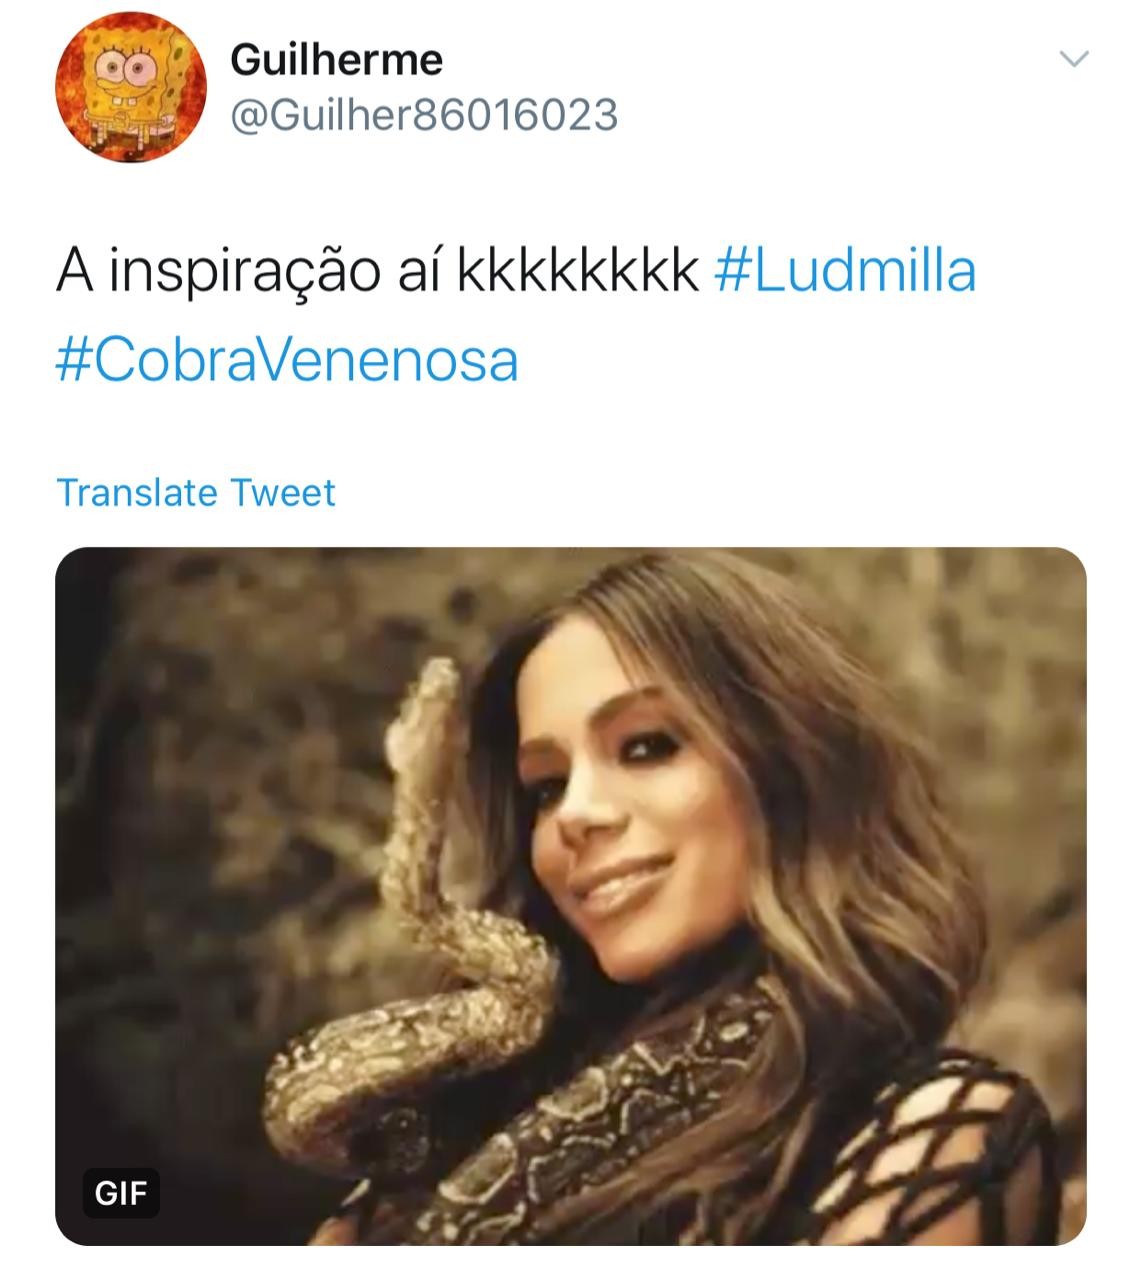 Fãs reagem à sósia de Anitta em novo clipe de Ludmilla (Foto: Reprodução/Twitter)